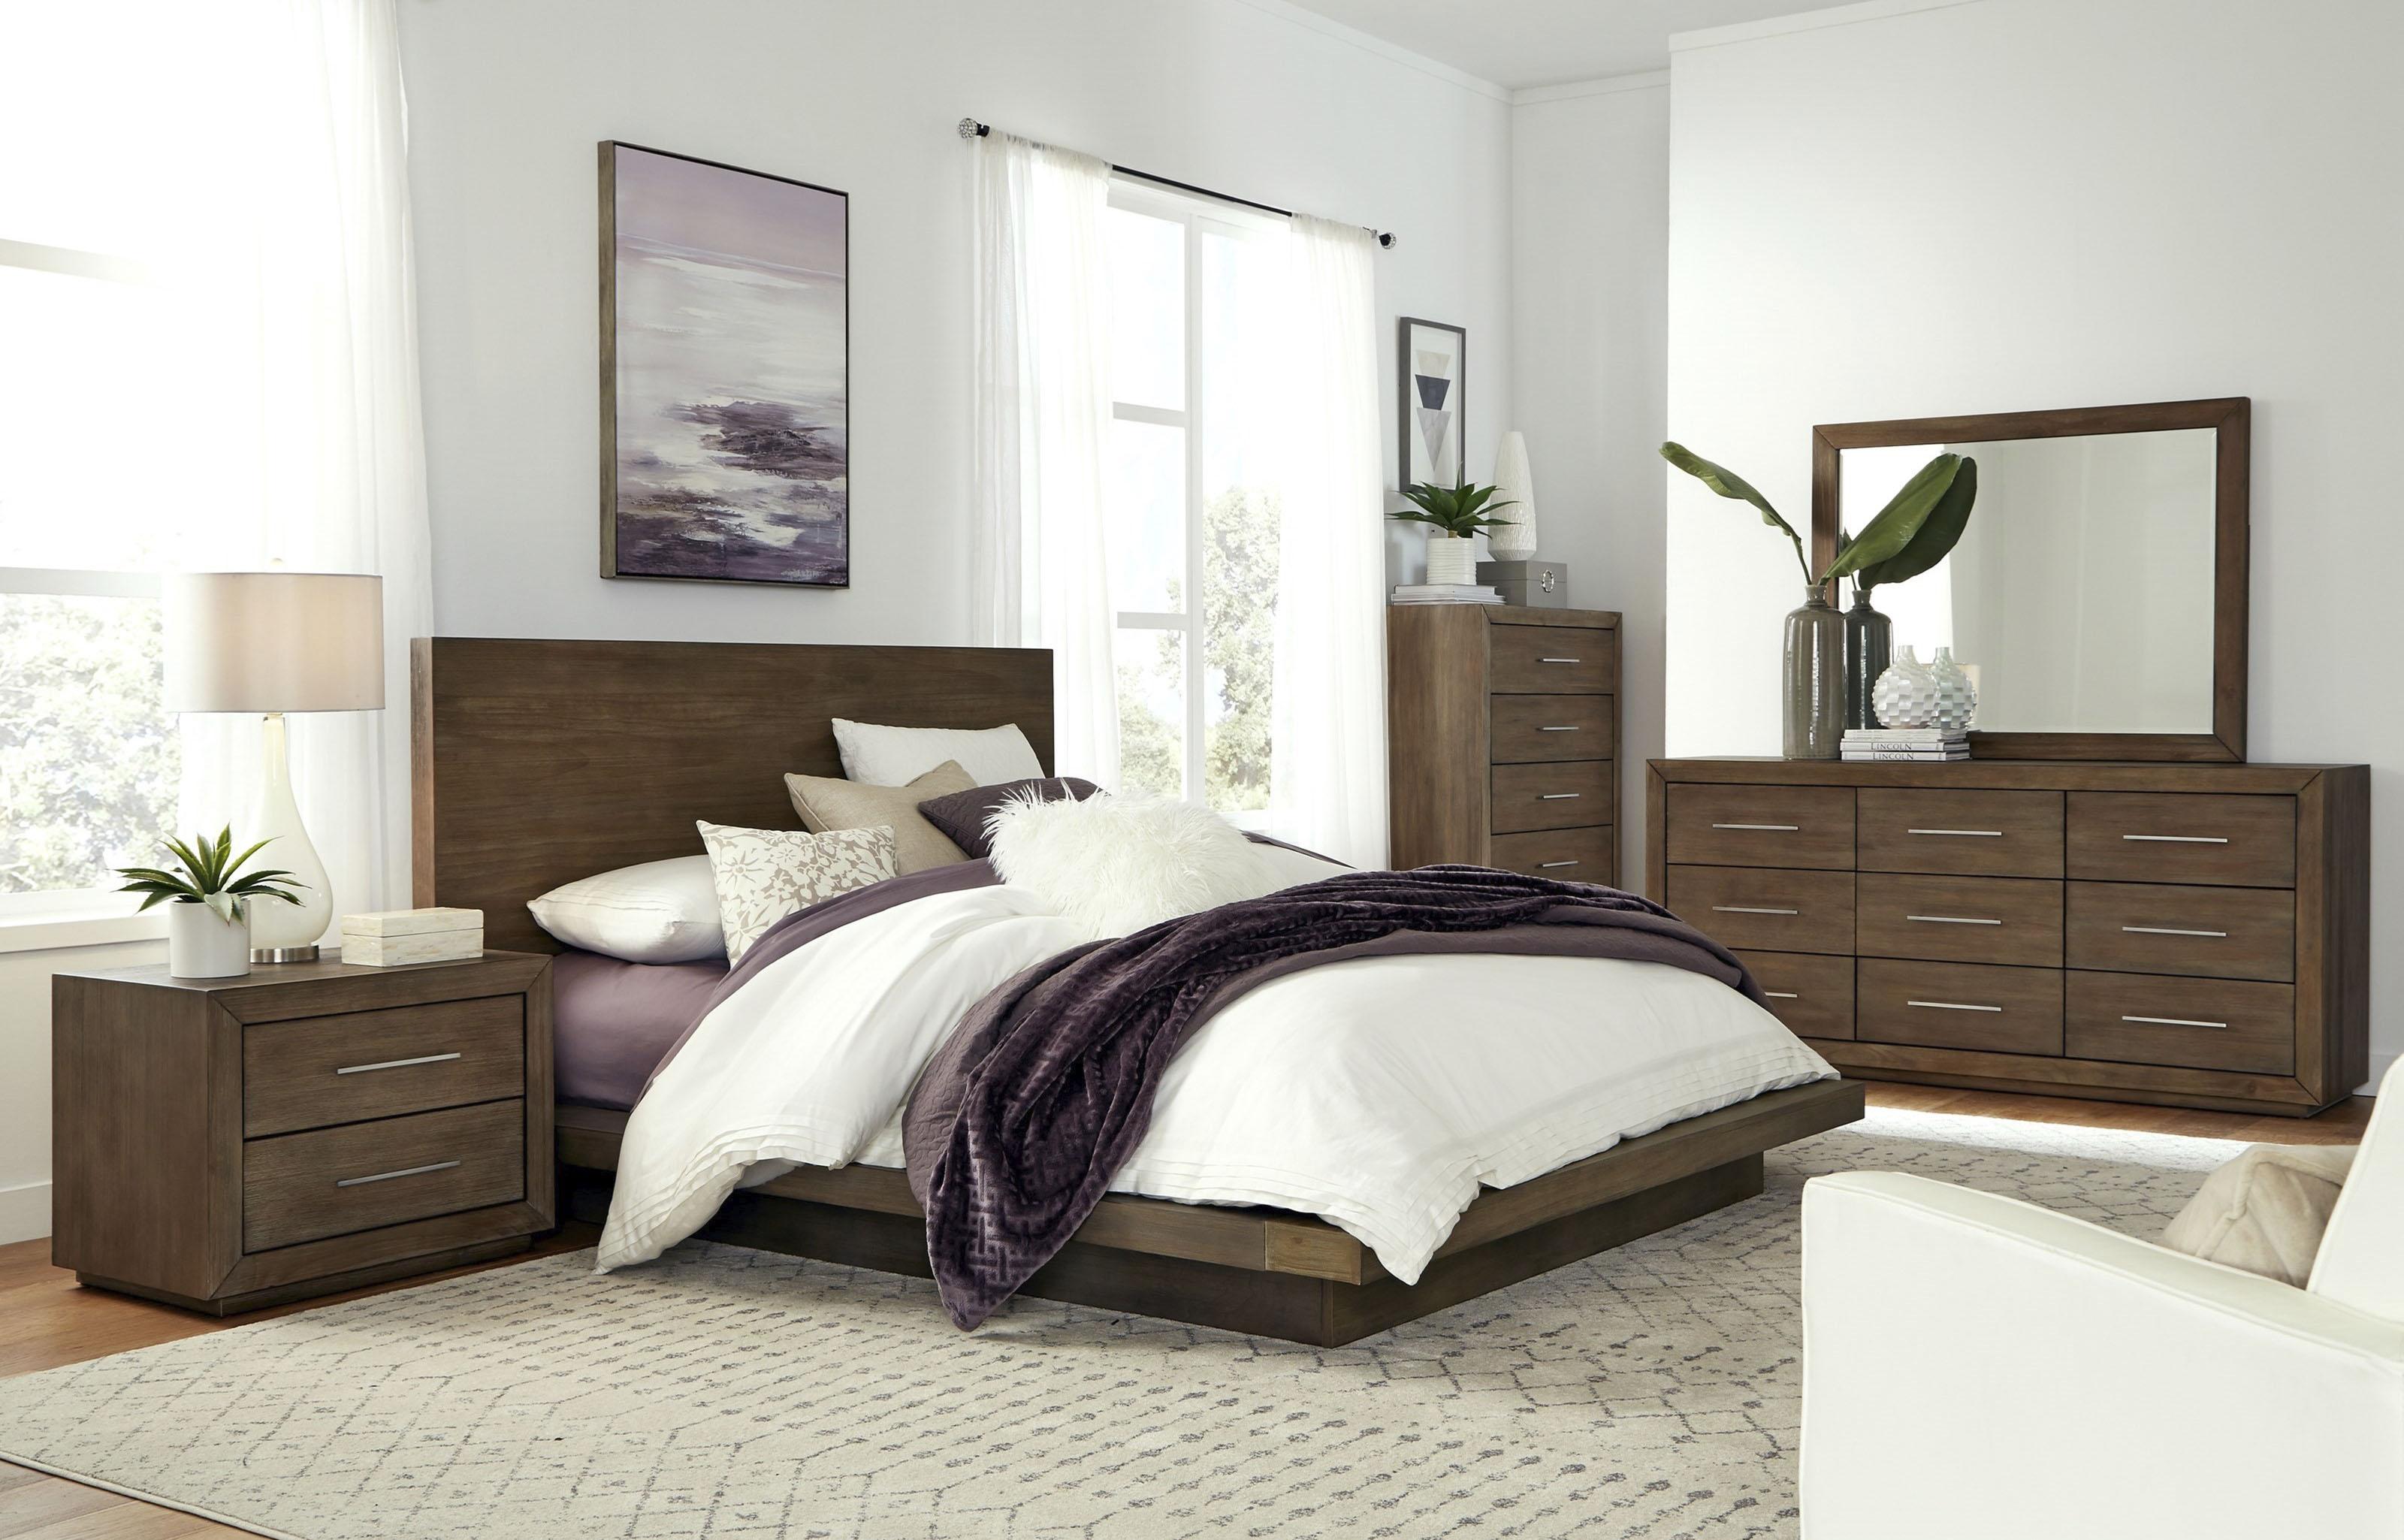 

    
Rustic Dark Pine King Platform Bedroom Set 5Pcs MELBOURNE by Modus Furniture
